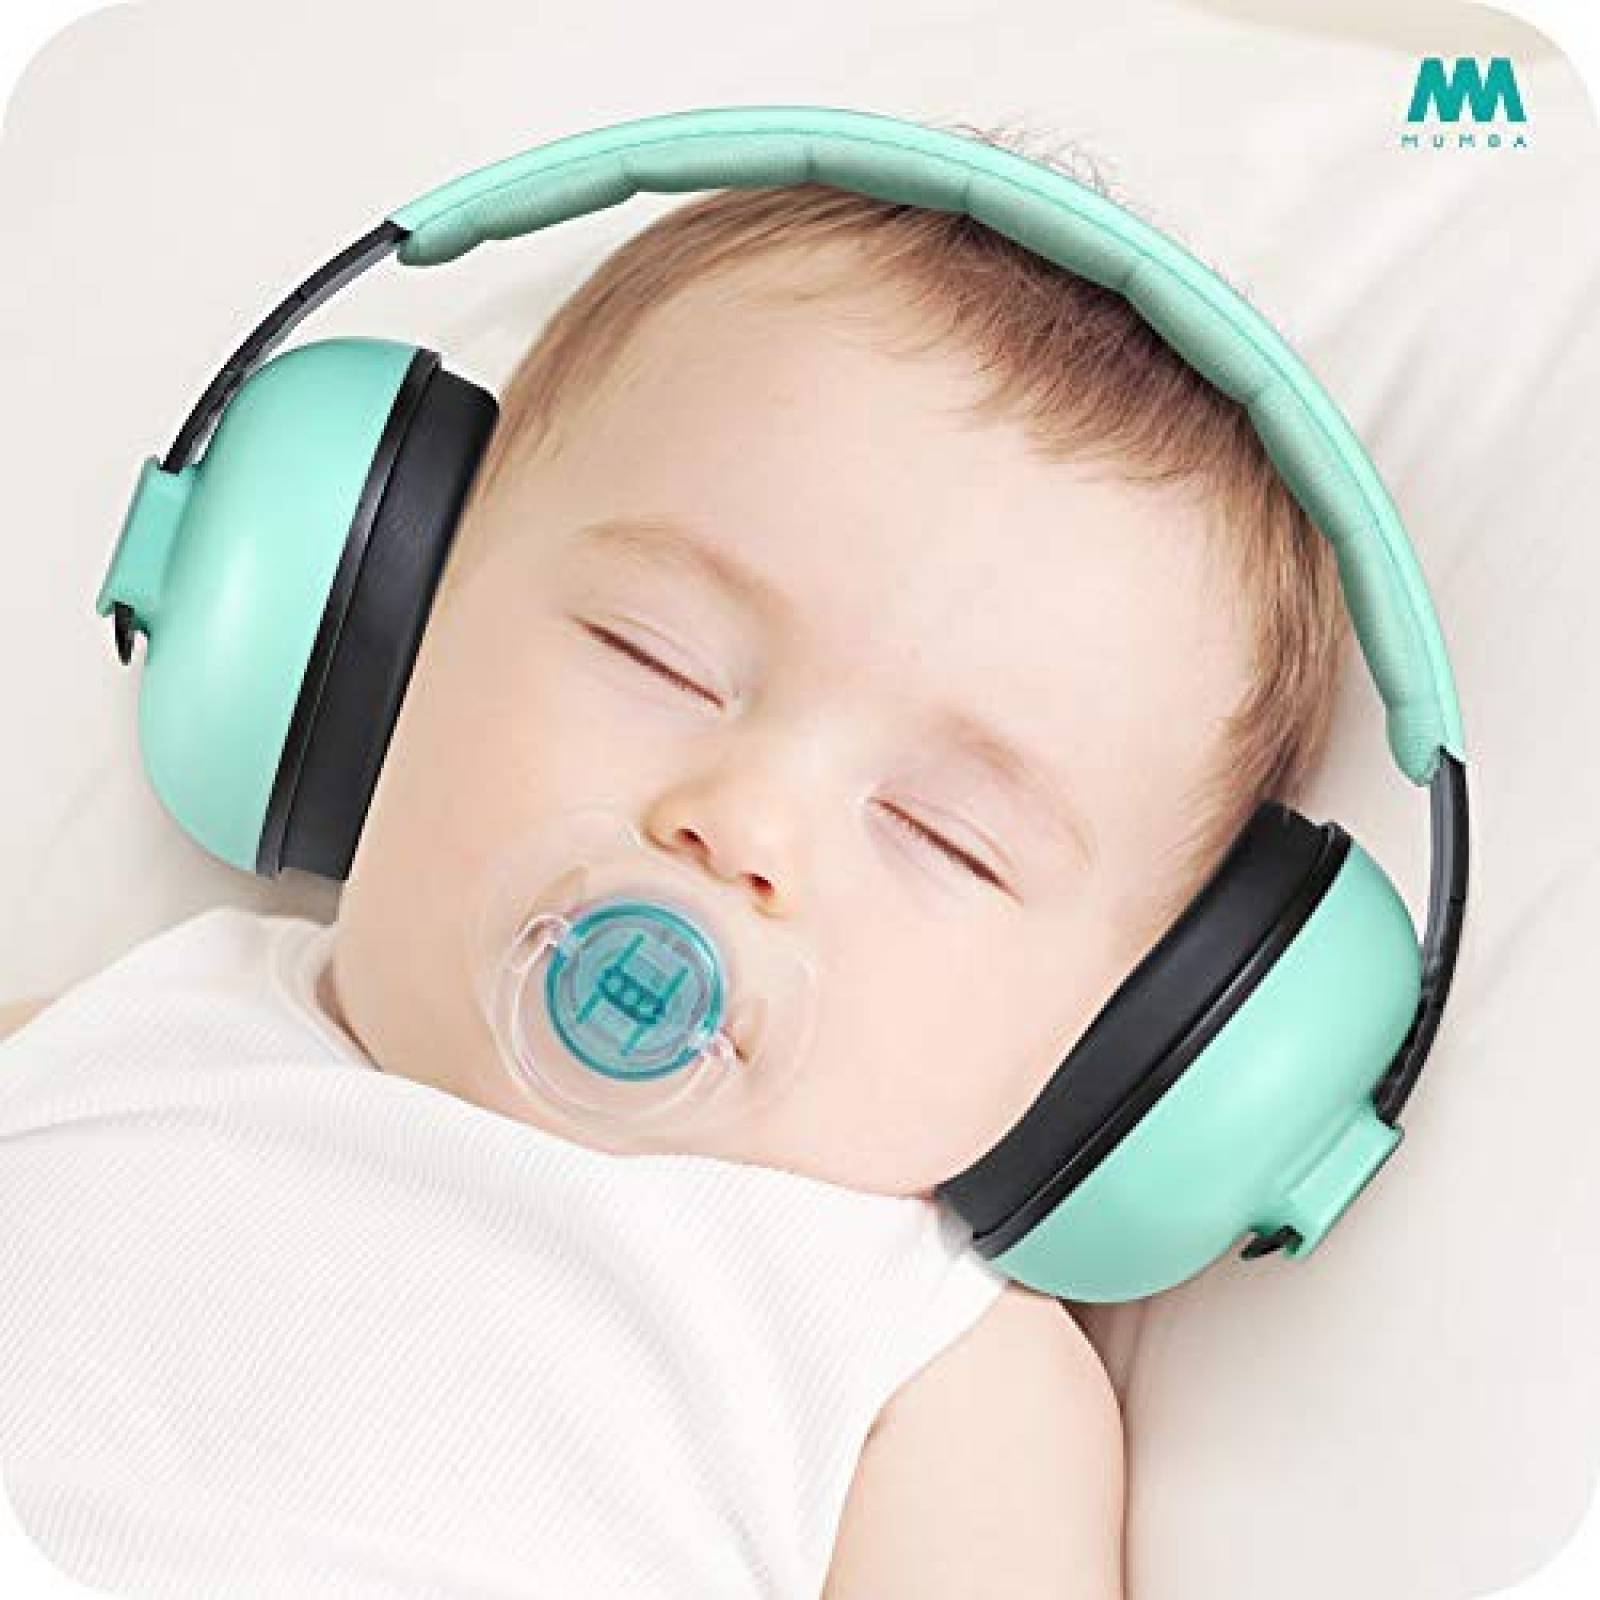 Protección Bebé Mumba para Oídos 3-24 Meses Efectivo -Aqua